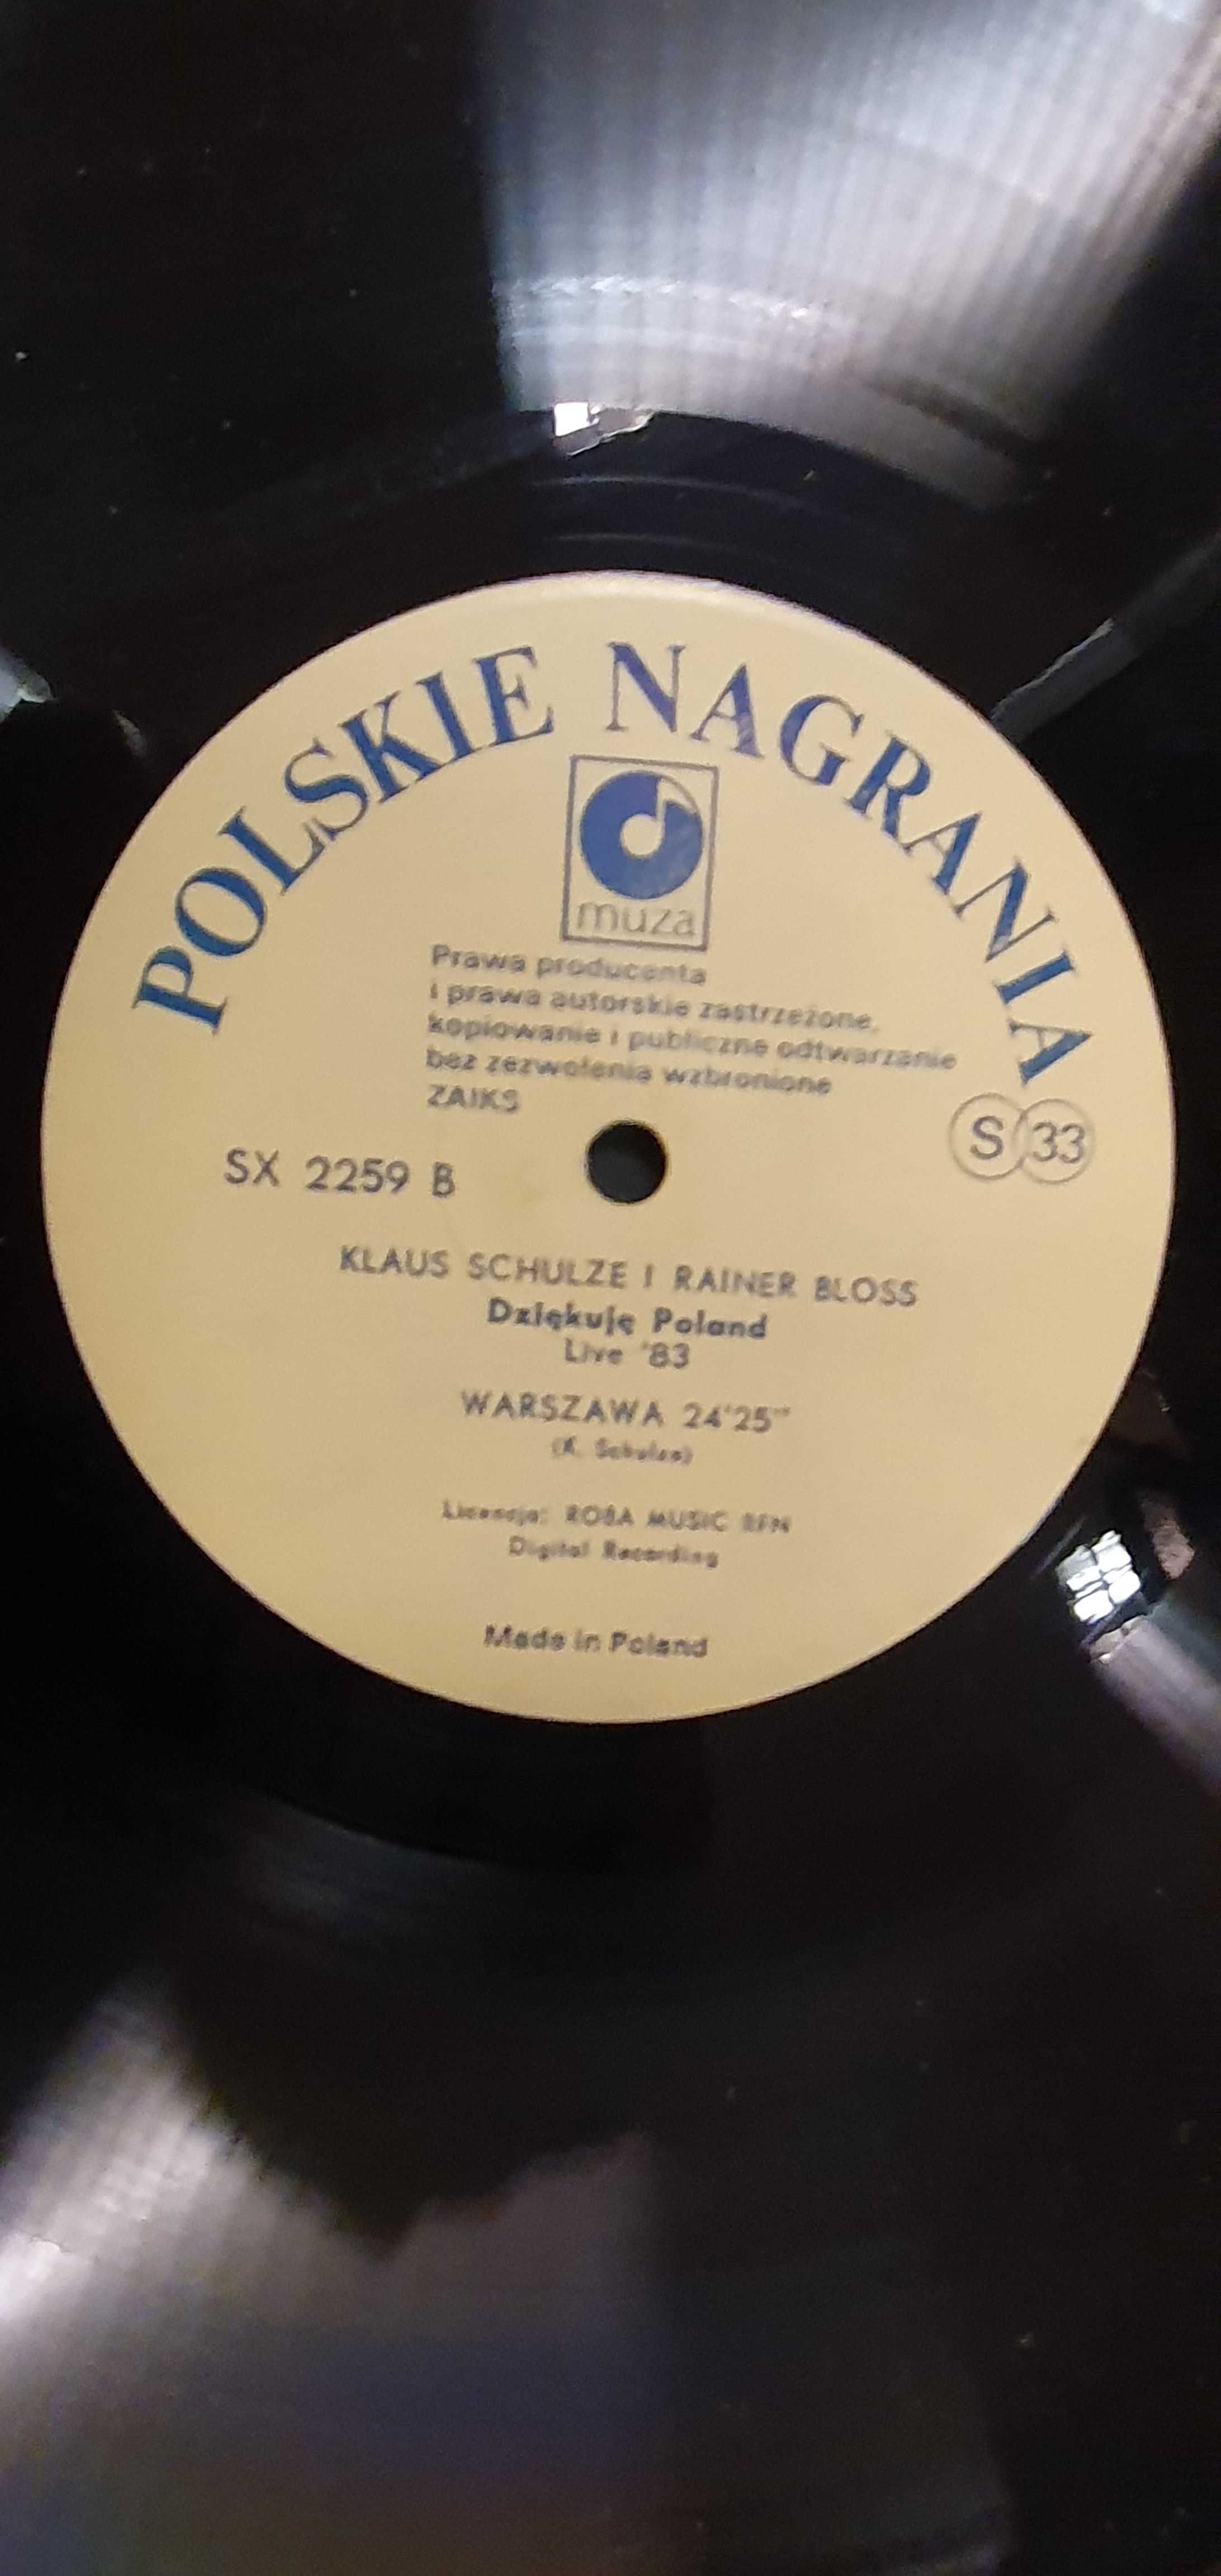 NM Dziękuję Poland Live '83 Klaus Schulze, Rainer Bloss [143]